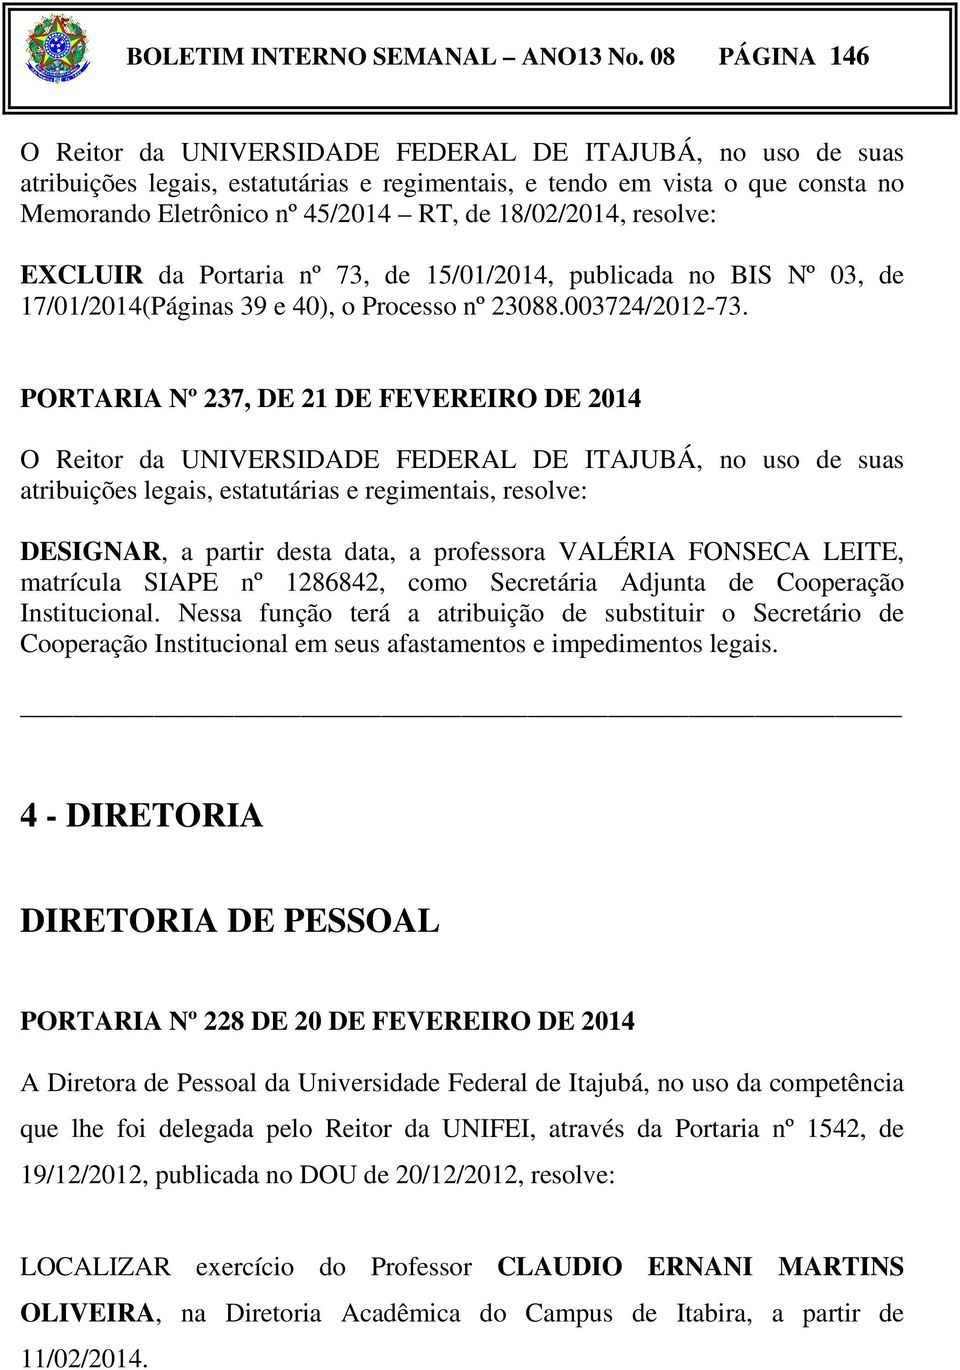 18/02/2014, resolve: EXCLUIR da Portaria nº 73, de 15/01/2014, publicada no BIS Nº 03, de 17/01/2014(Páginas 39 e 40, o Processo nº 23088.003724/2012-73.